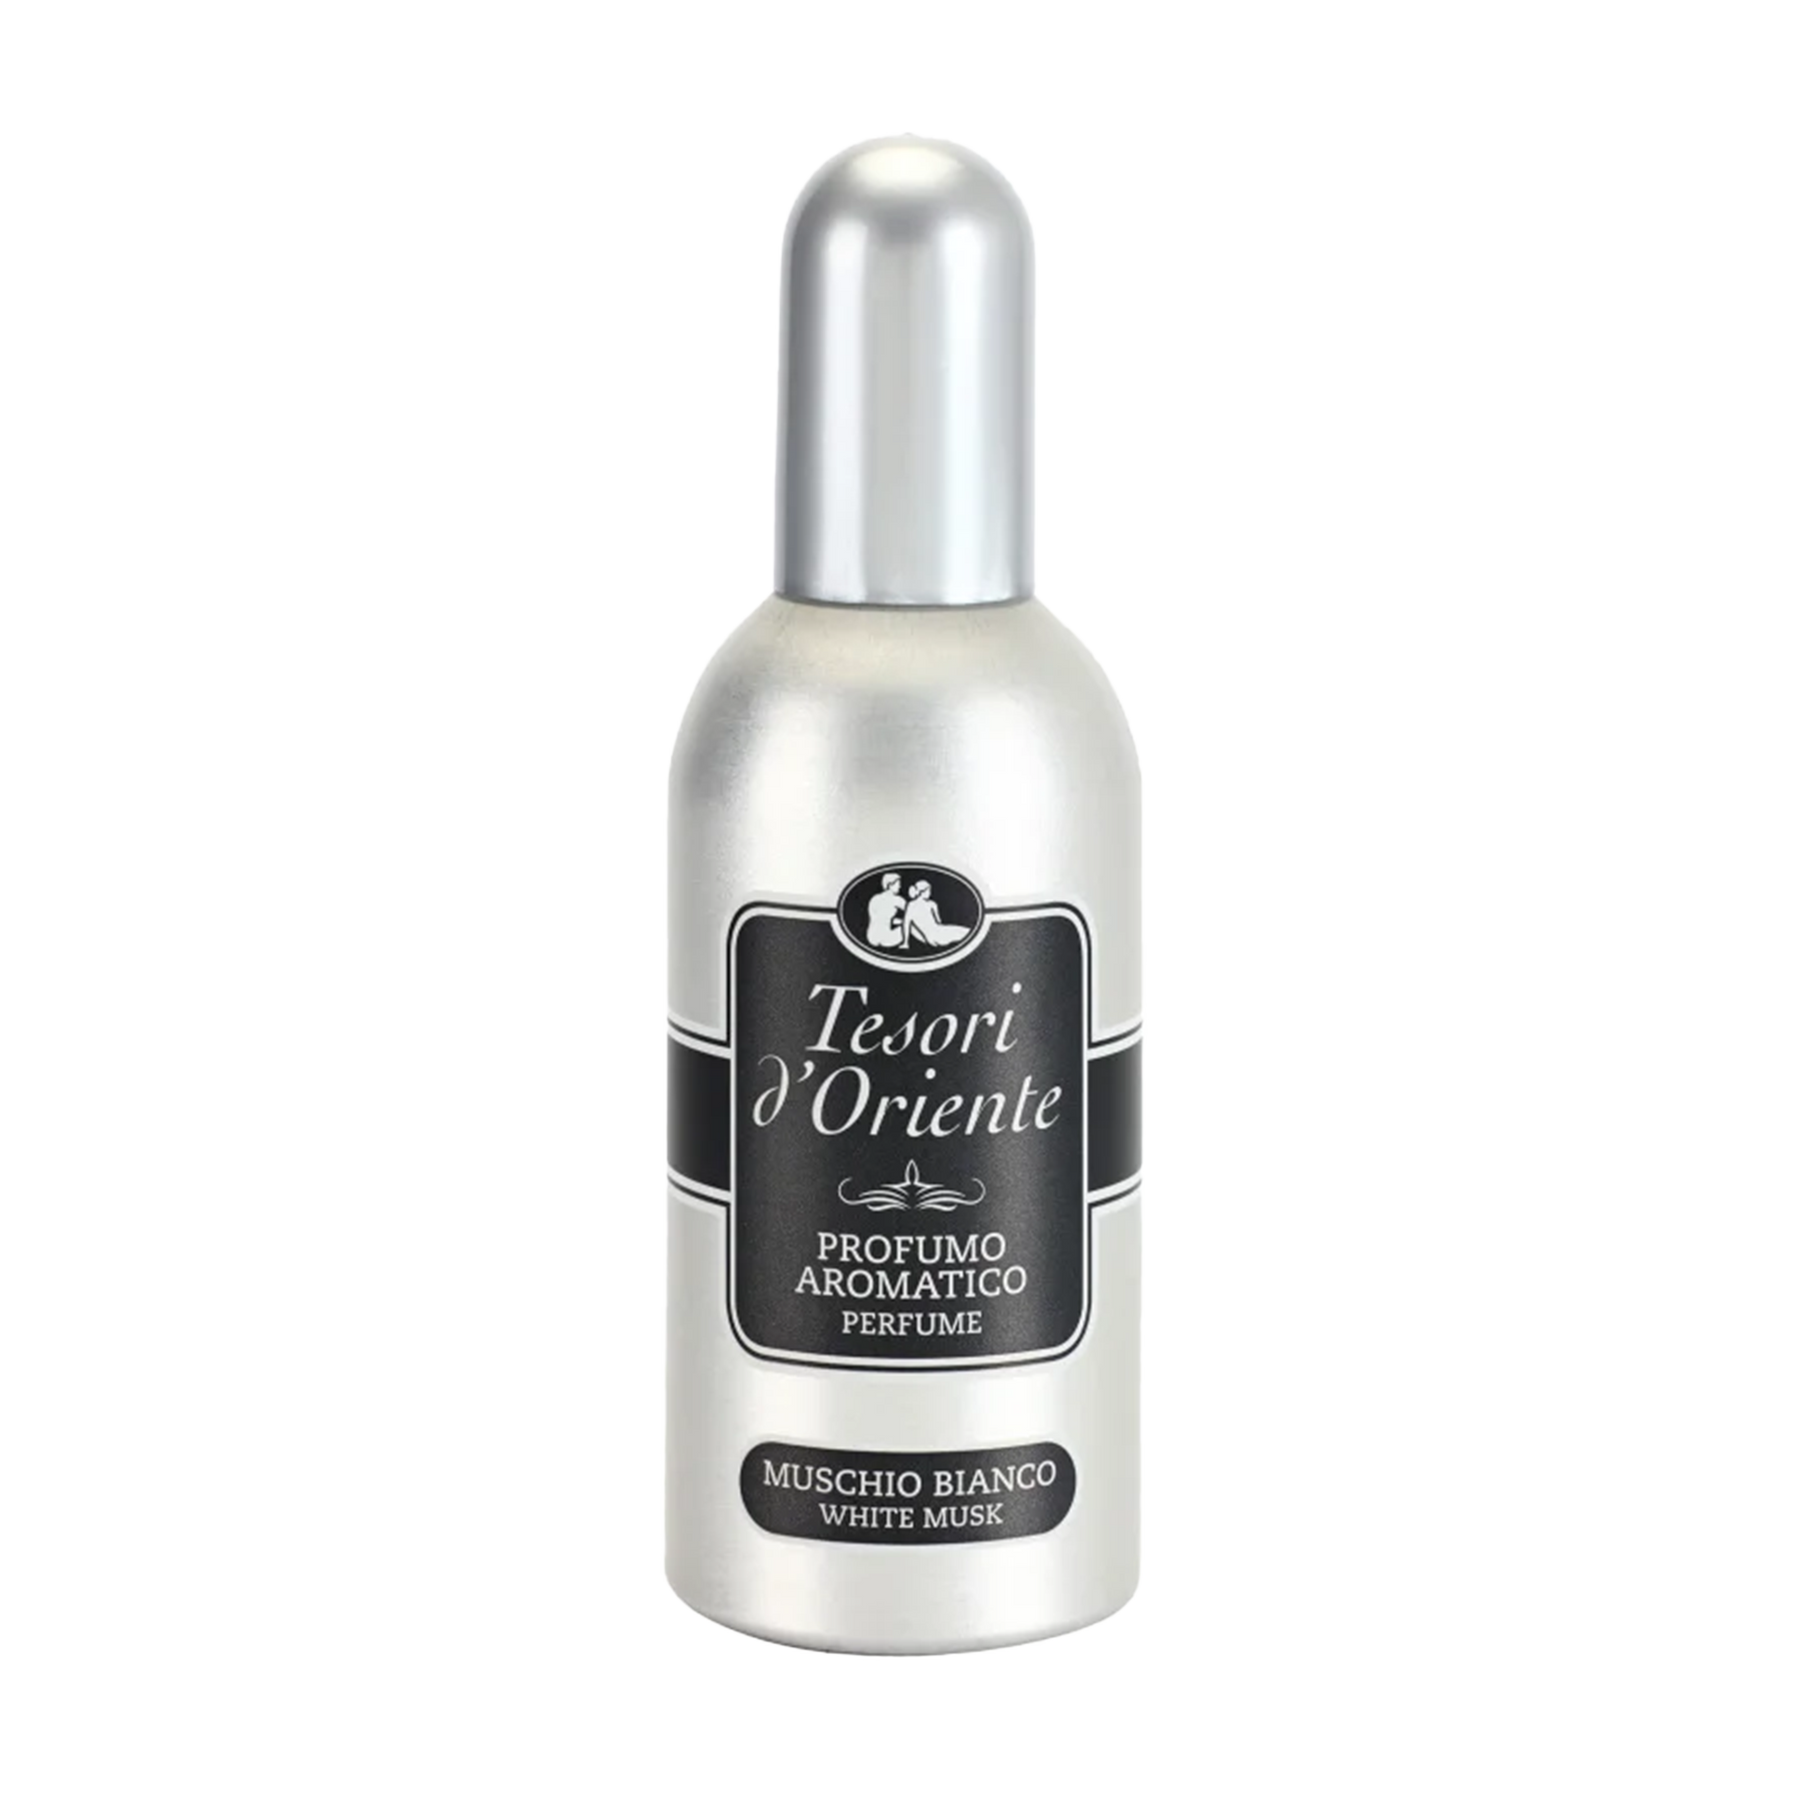 Tesoros orientales de perfume aromático desodorante almizcle blanco 100 ml